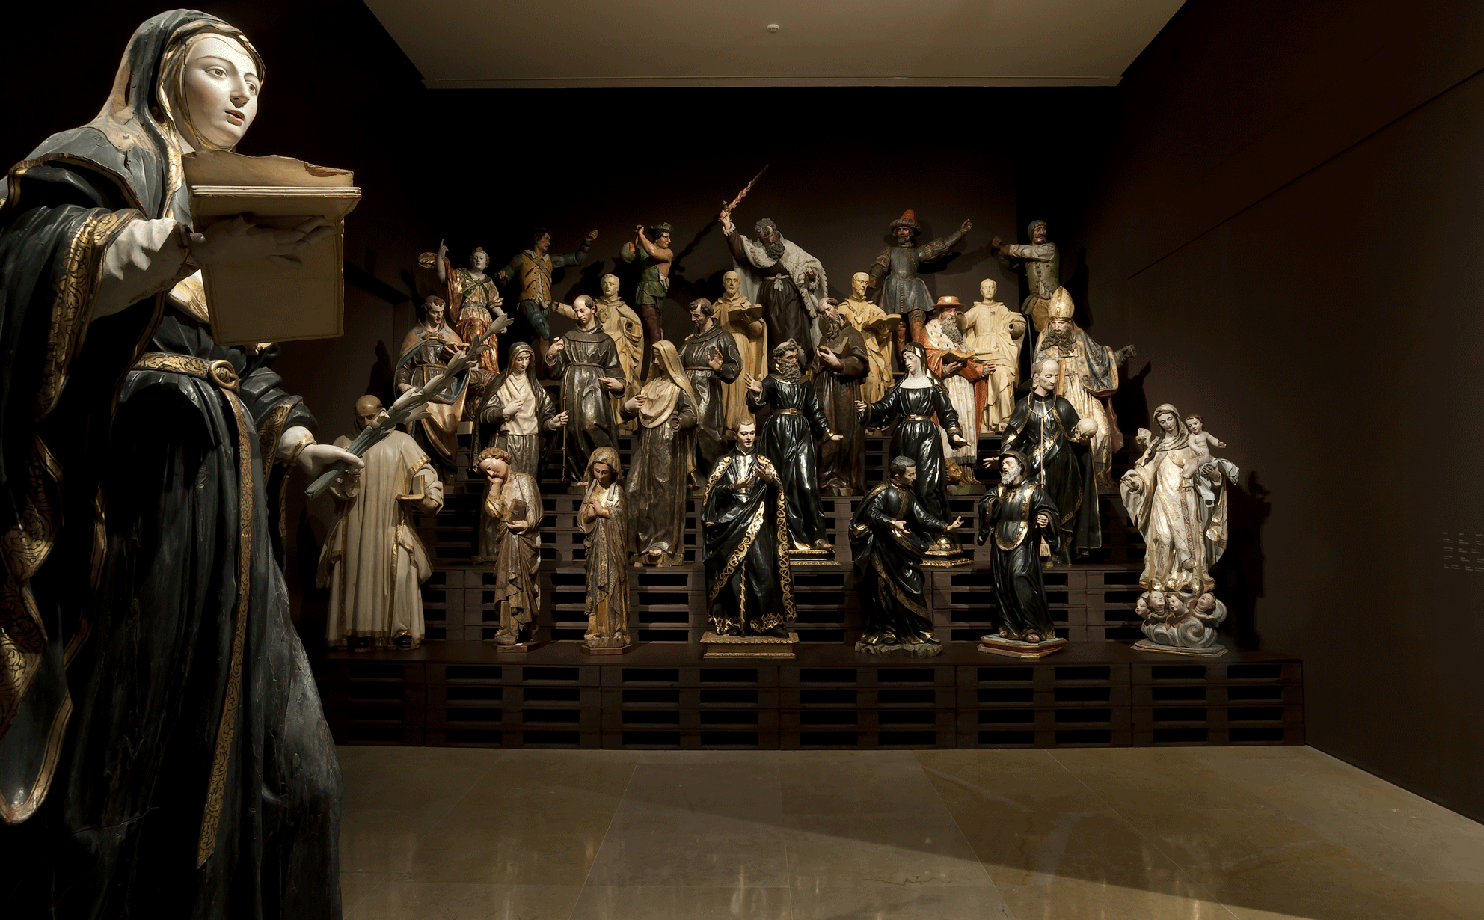 Almacén. El lugar de los invisibles. Museo Nacional de Escultura.